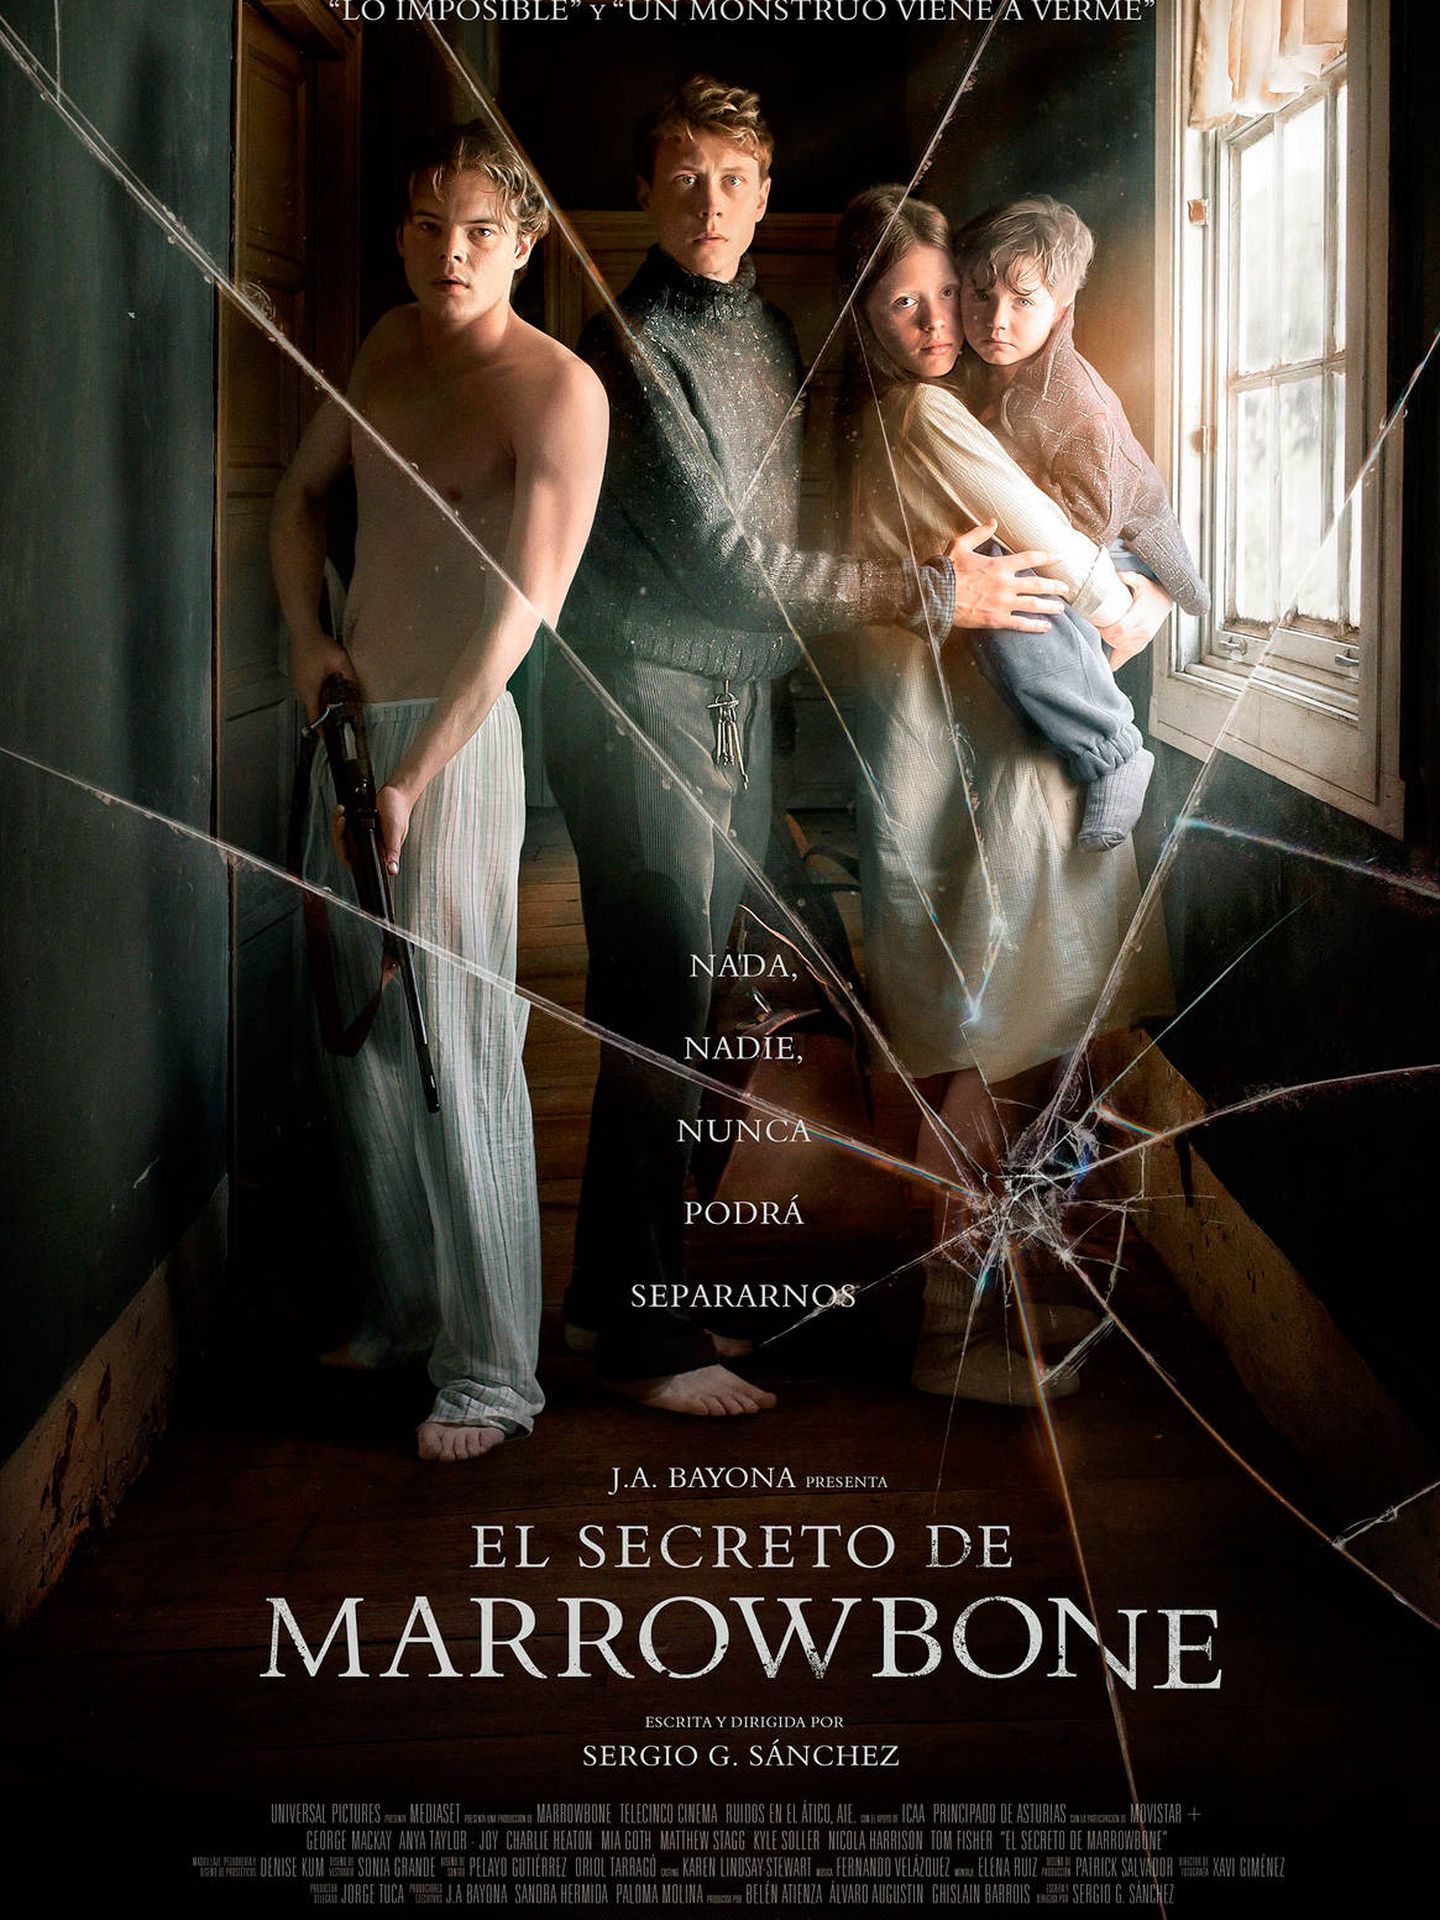 El secreto de Marrowbone': cine de terror que recicla la fórmula Bayona